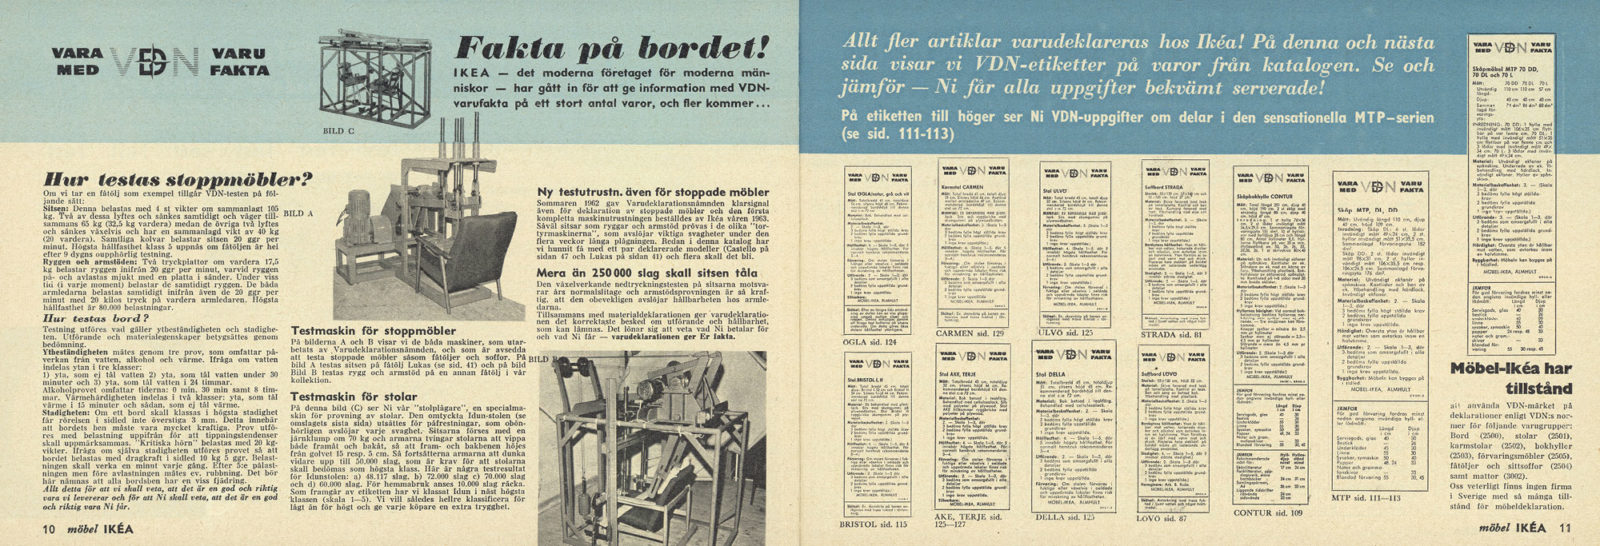 Doppelseite des IKEA Katalogs mit vielen Informationen über Möbeltests und zwei Bildern von Testmaschinen.